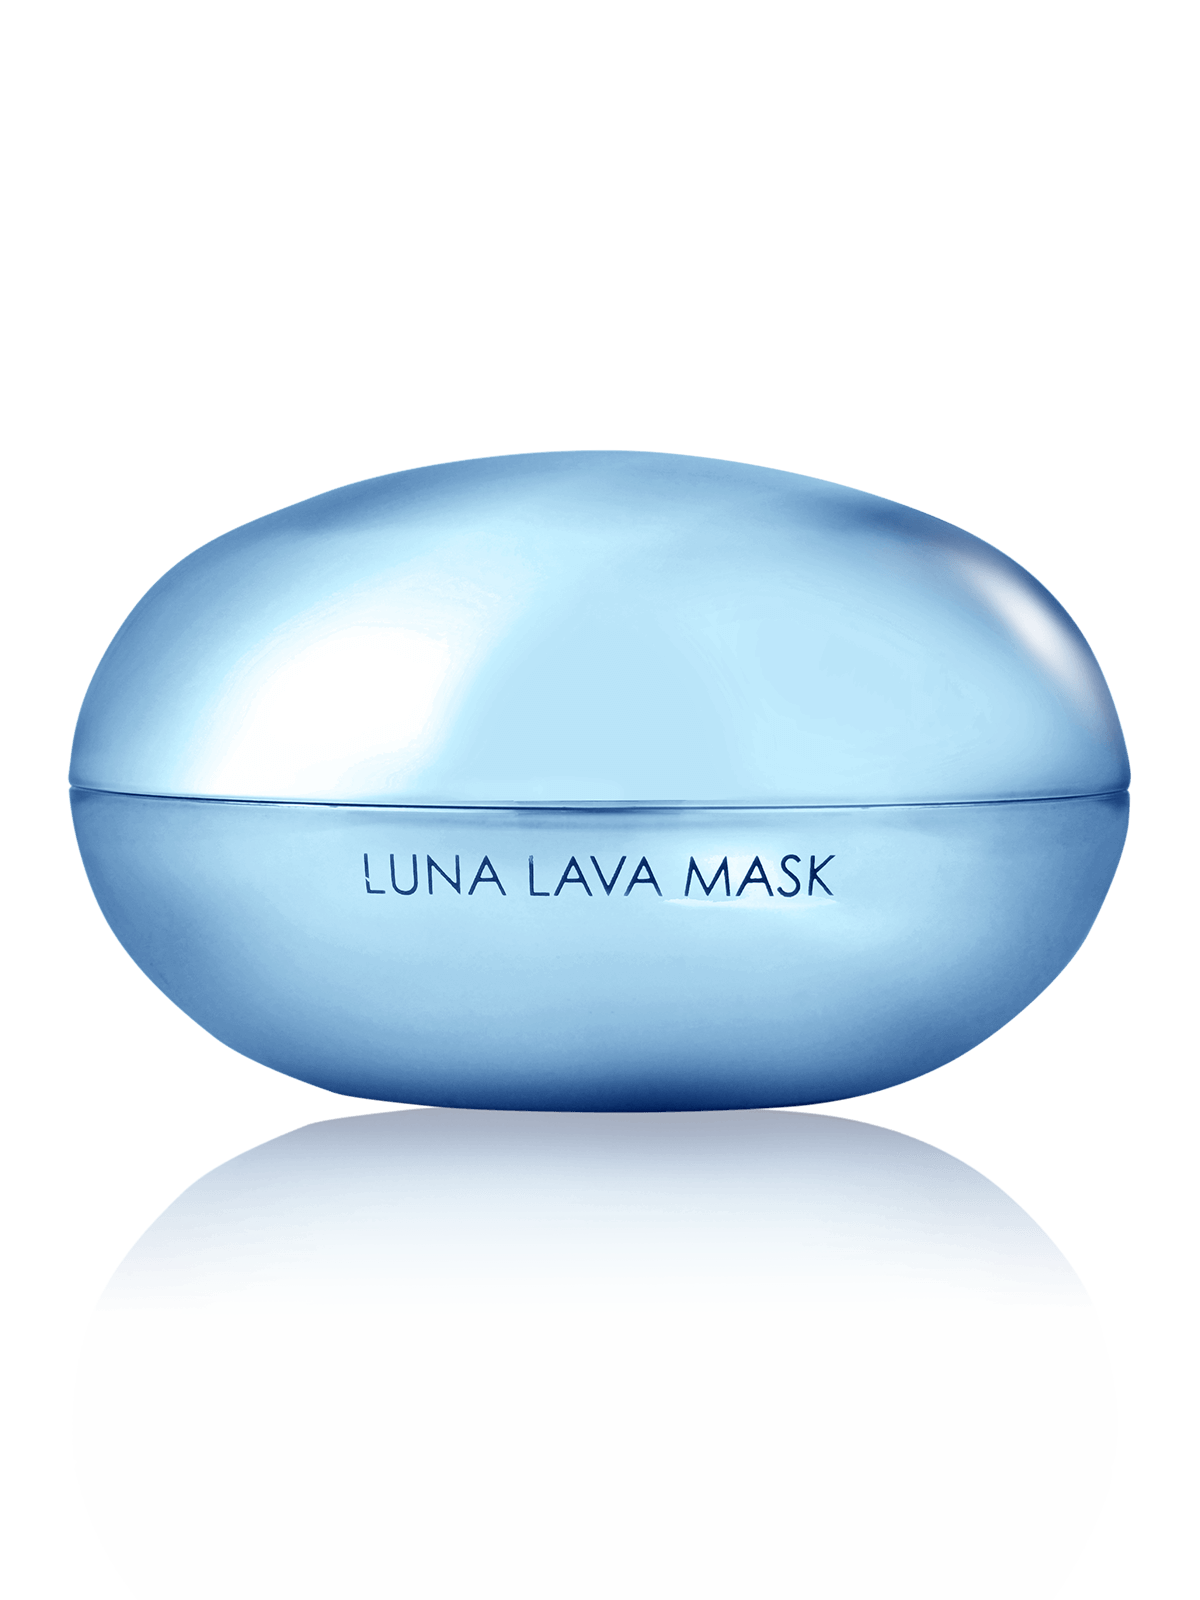 Luna Lava Mask back